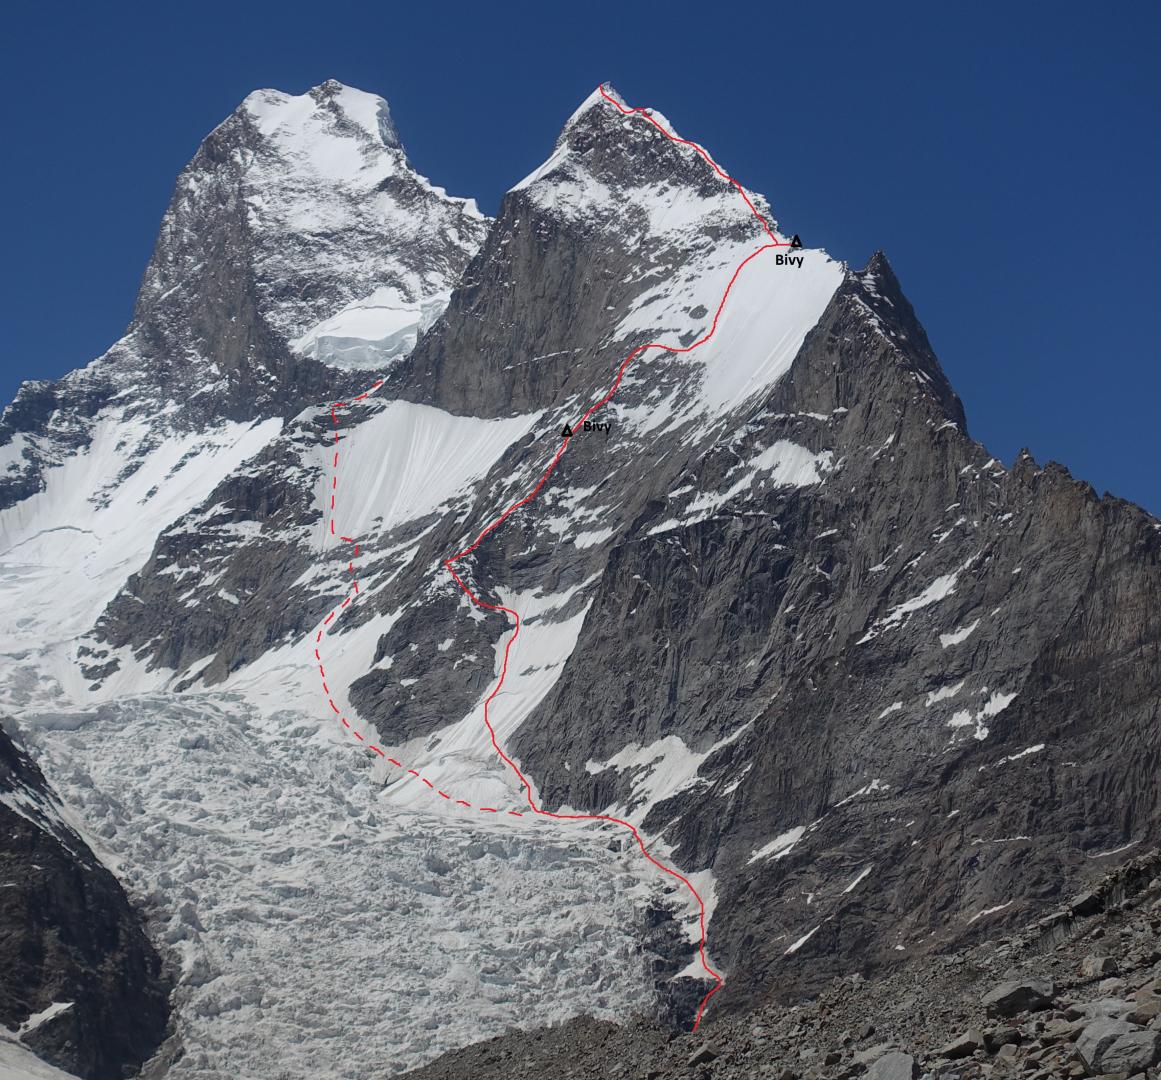 Маршрут на вершину  пика Black Tooth высотой 6718 метров. Музтаг Тауэр (Muztagh Tower) на фото слева